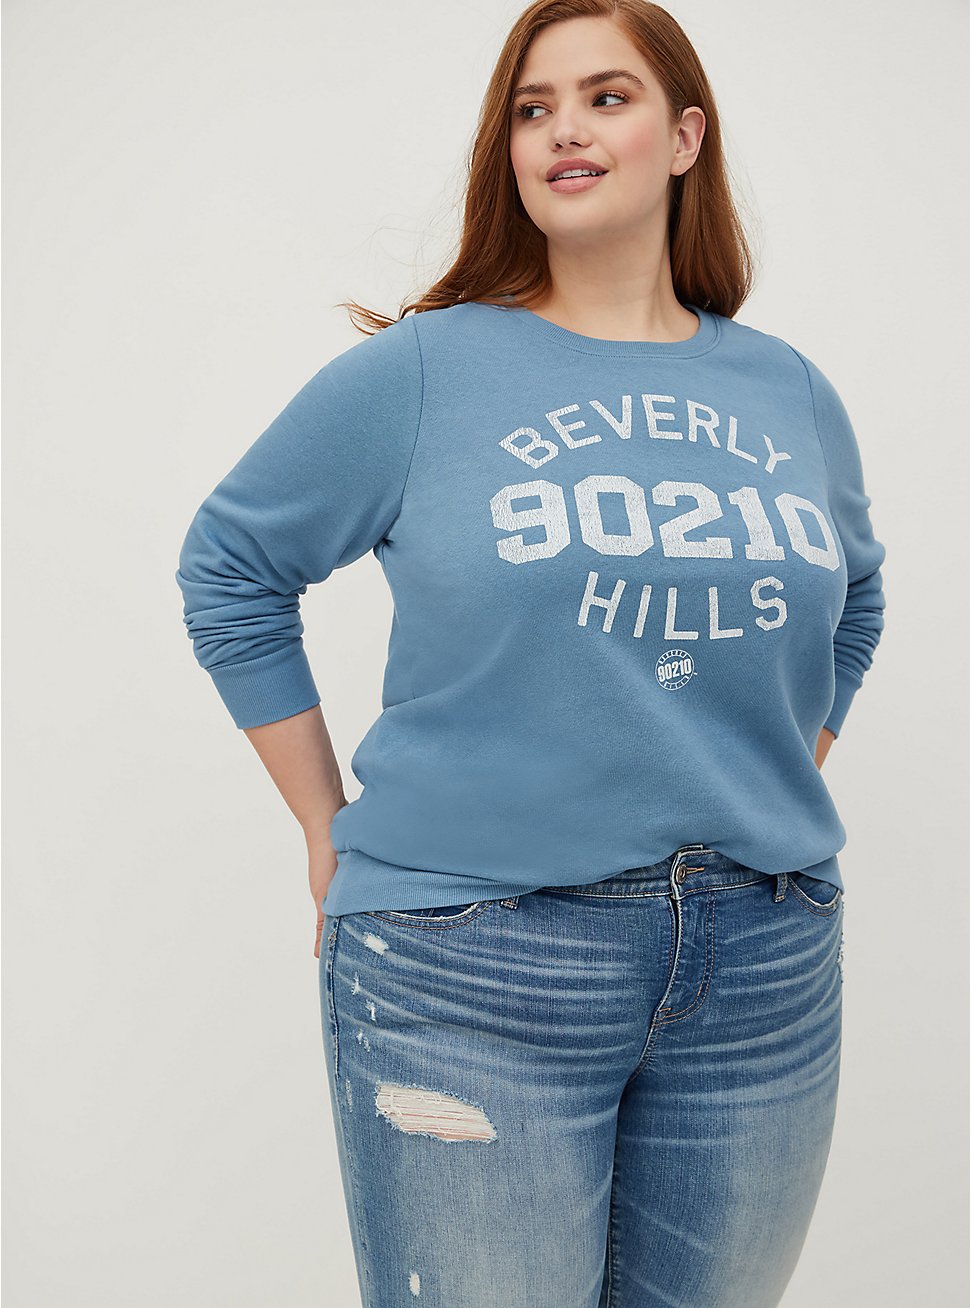 Sweatshirt - Cozy Fleece Beverly Hills Blue , BLUE, hi-res